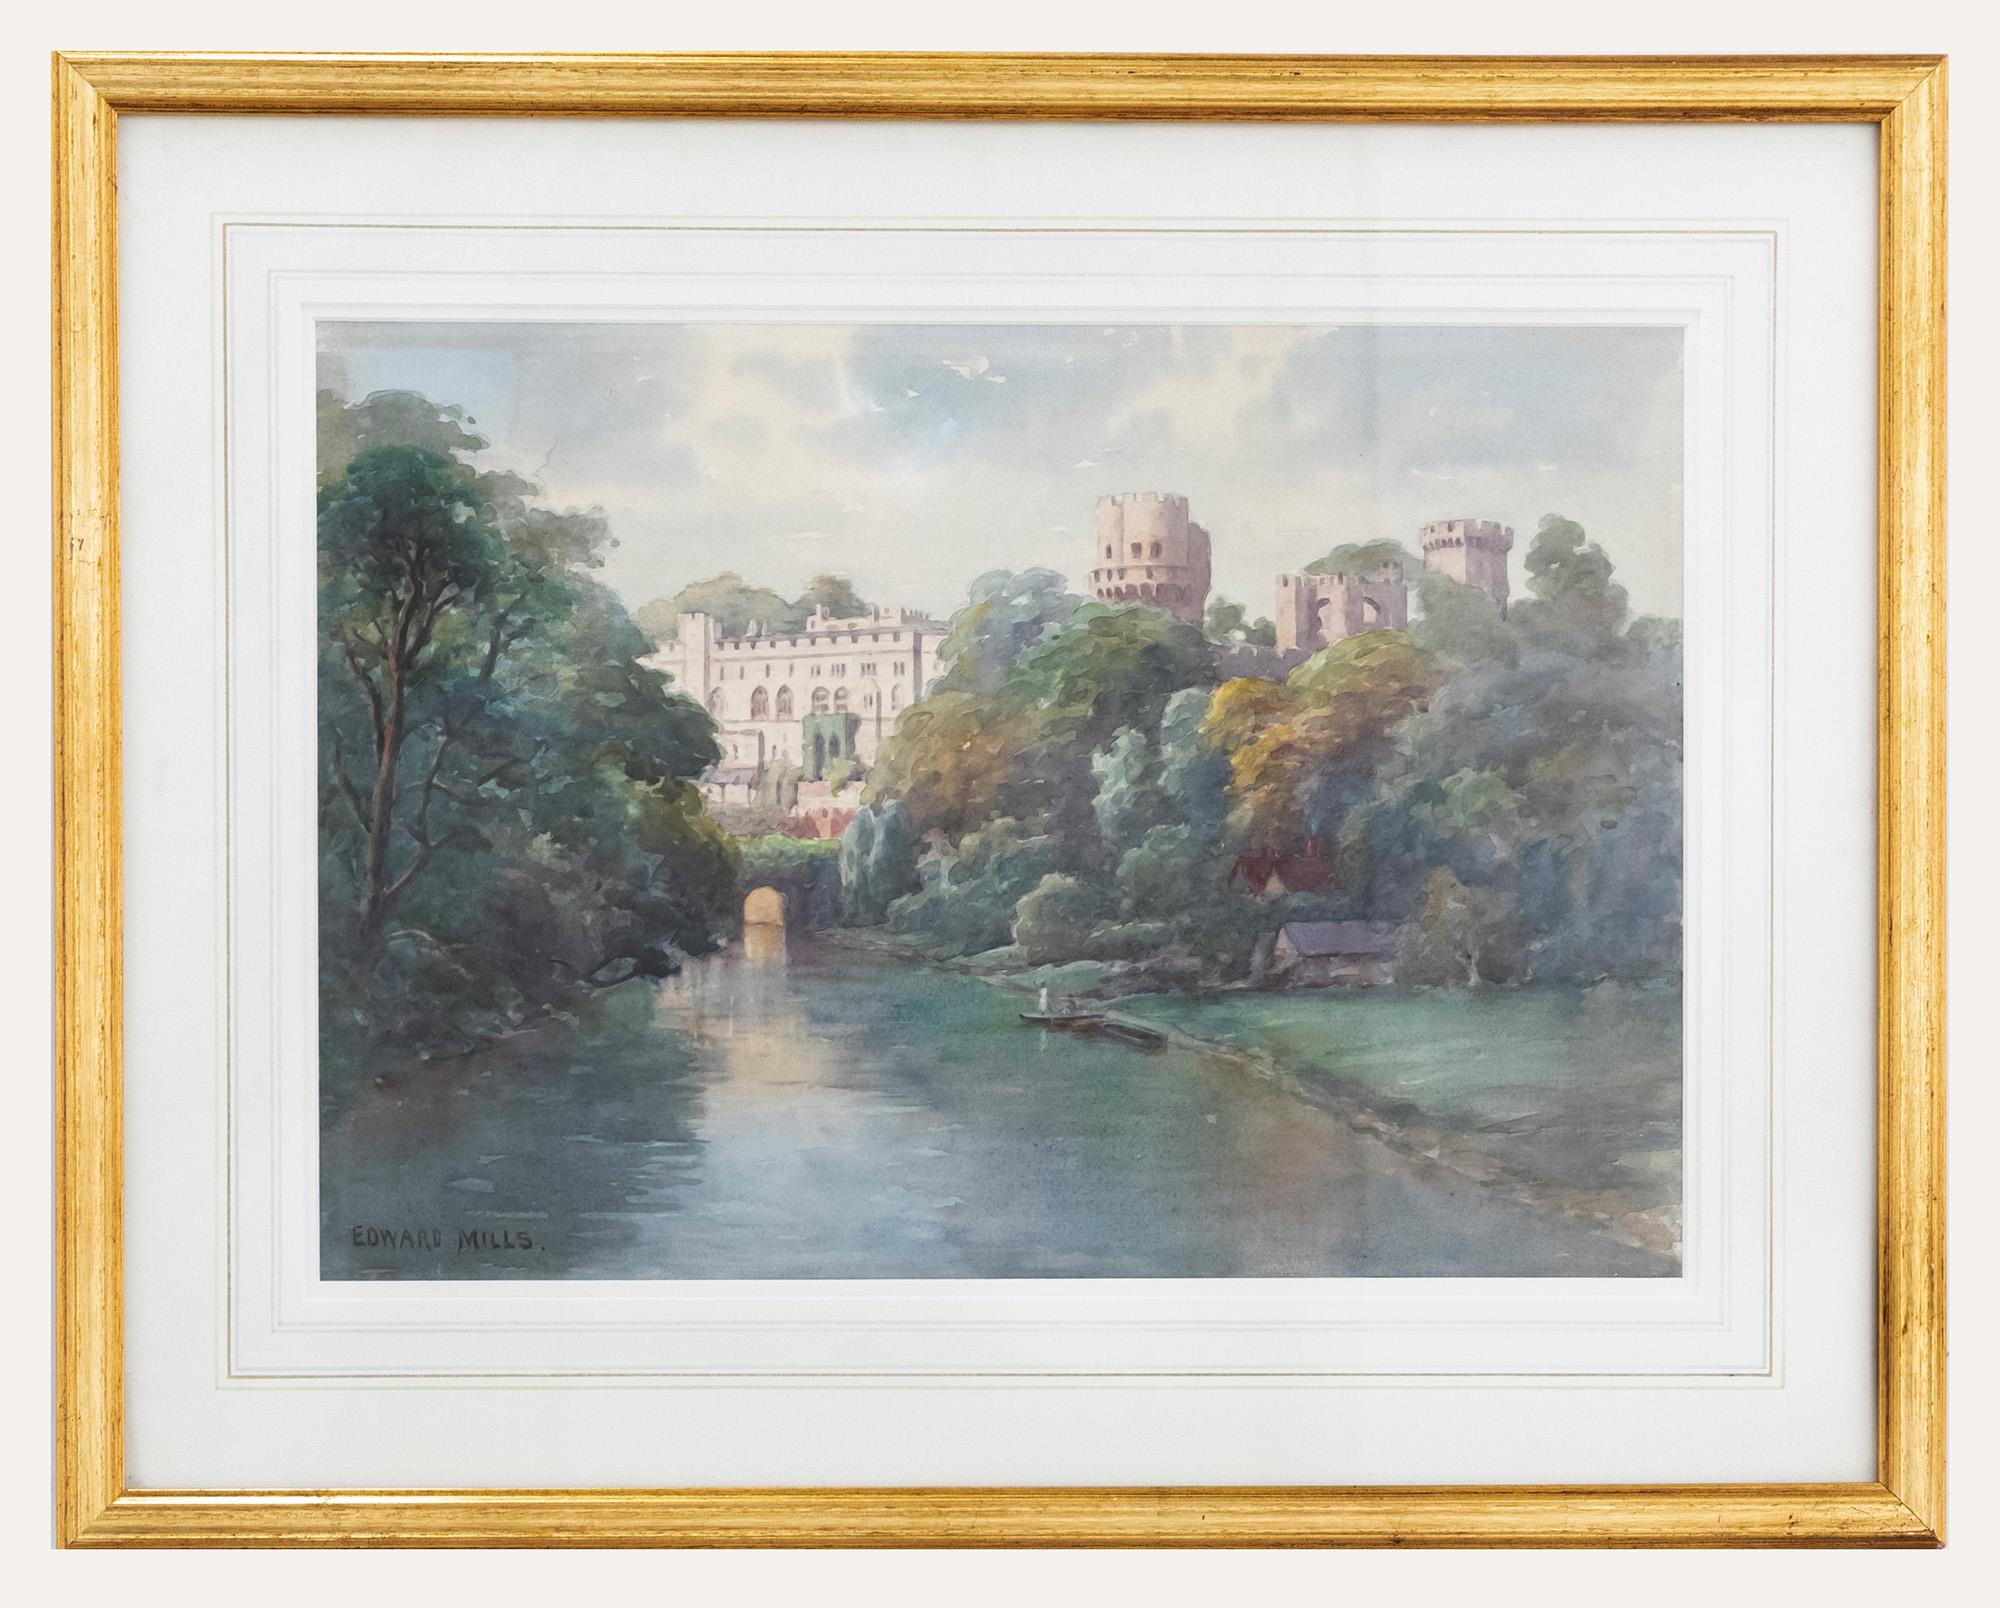 Unknown Landscape Art - Edward Mills (fl. 1876-1918) - Early 20th Century Watercolour, Warwick Castle